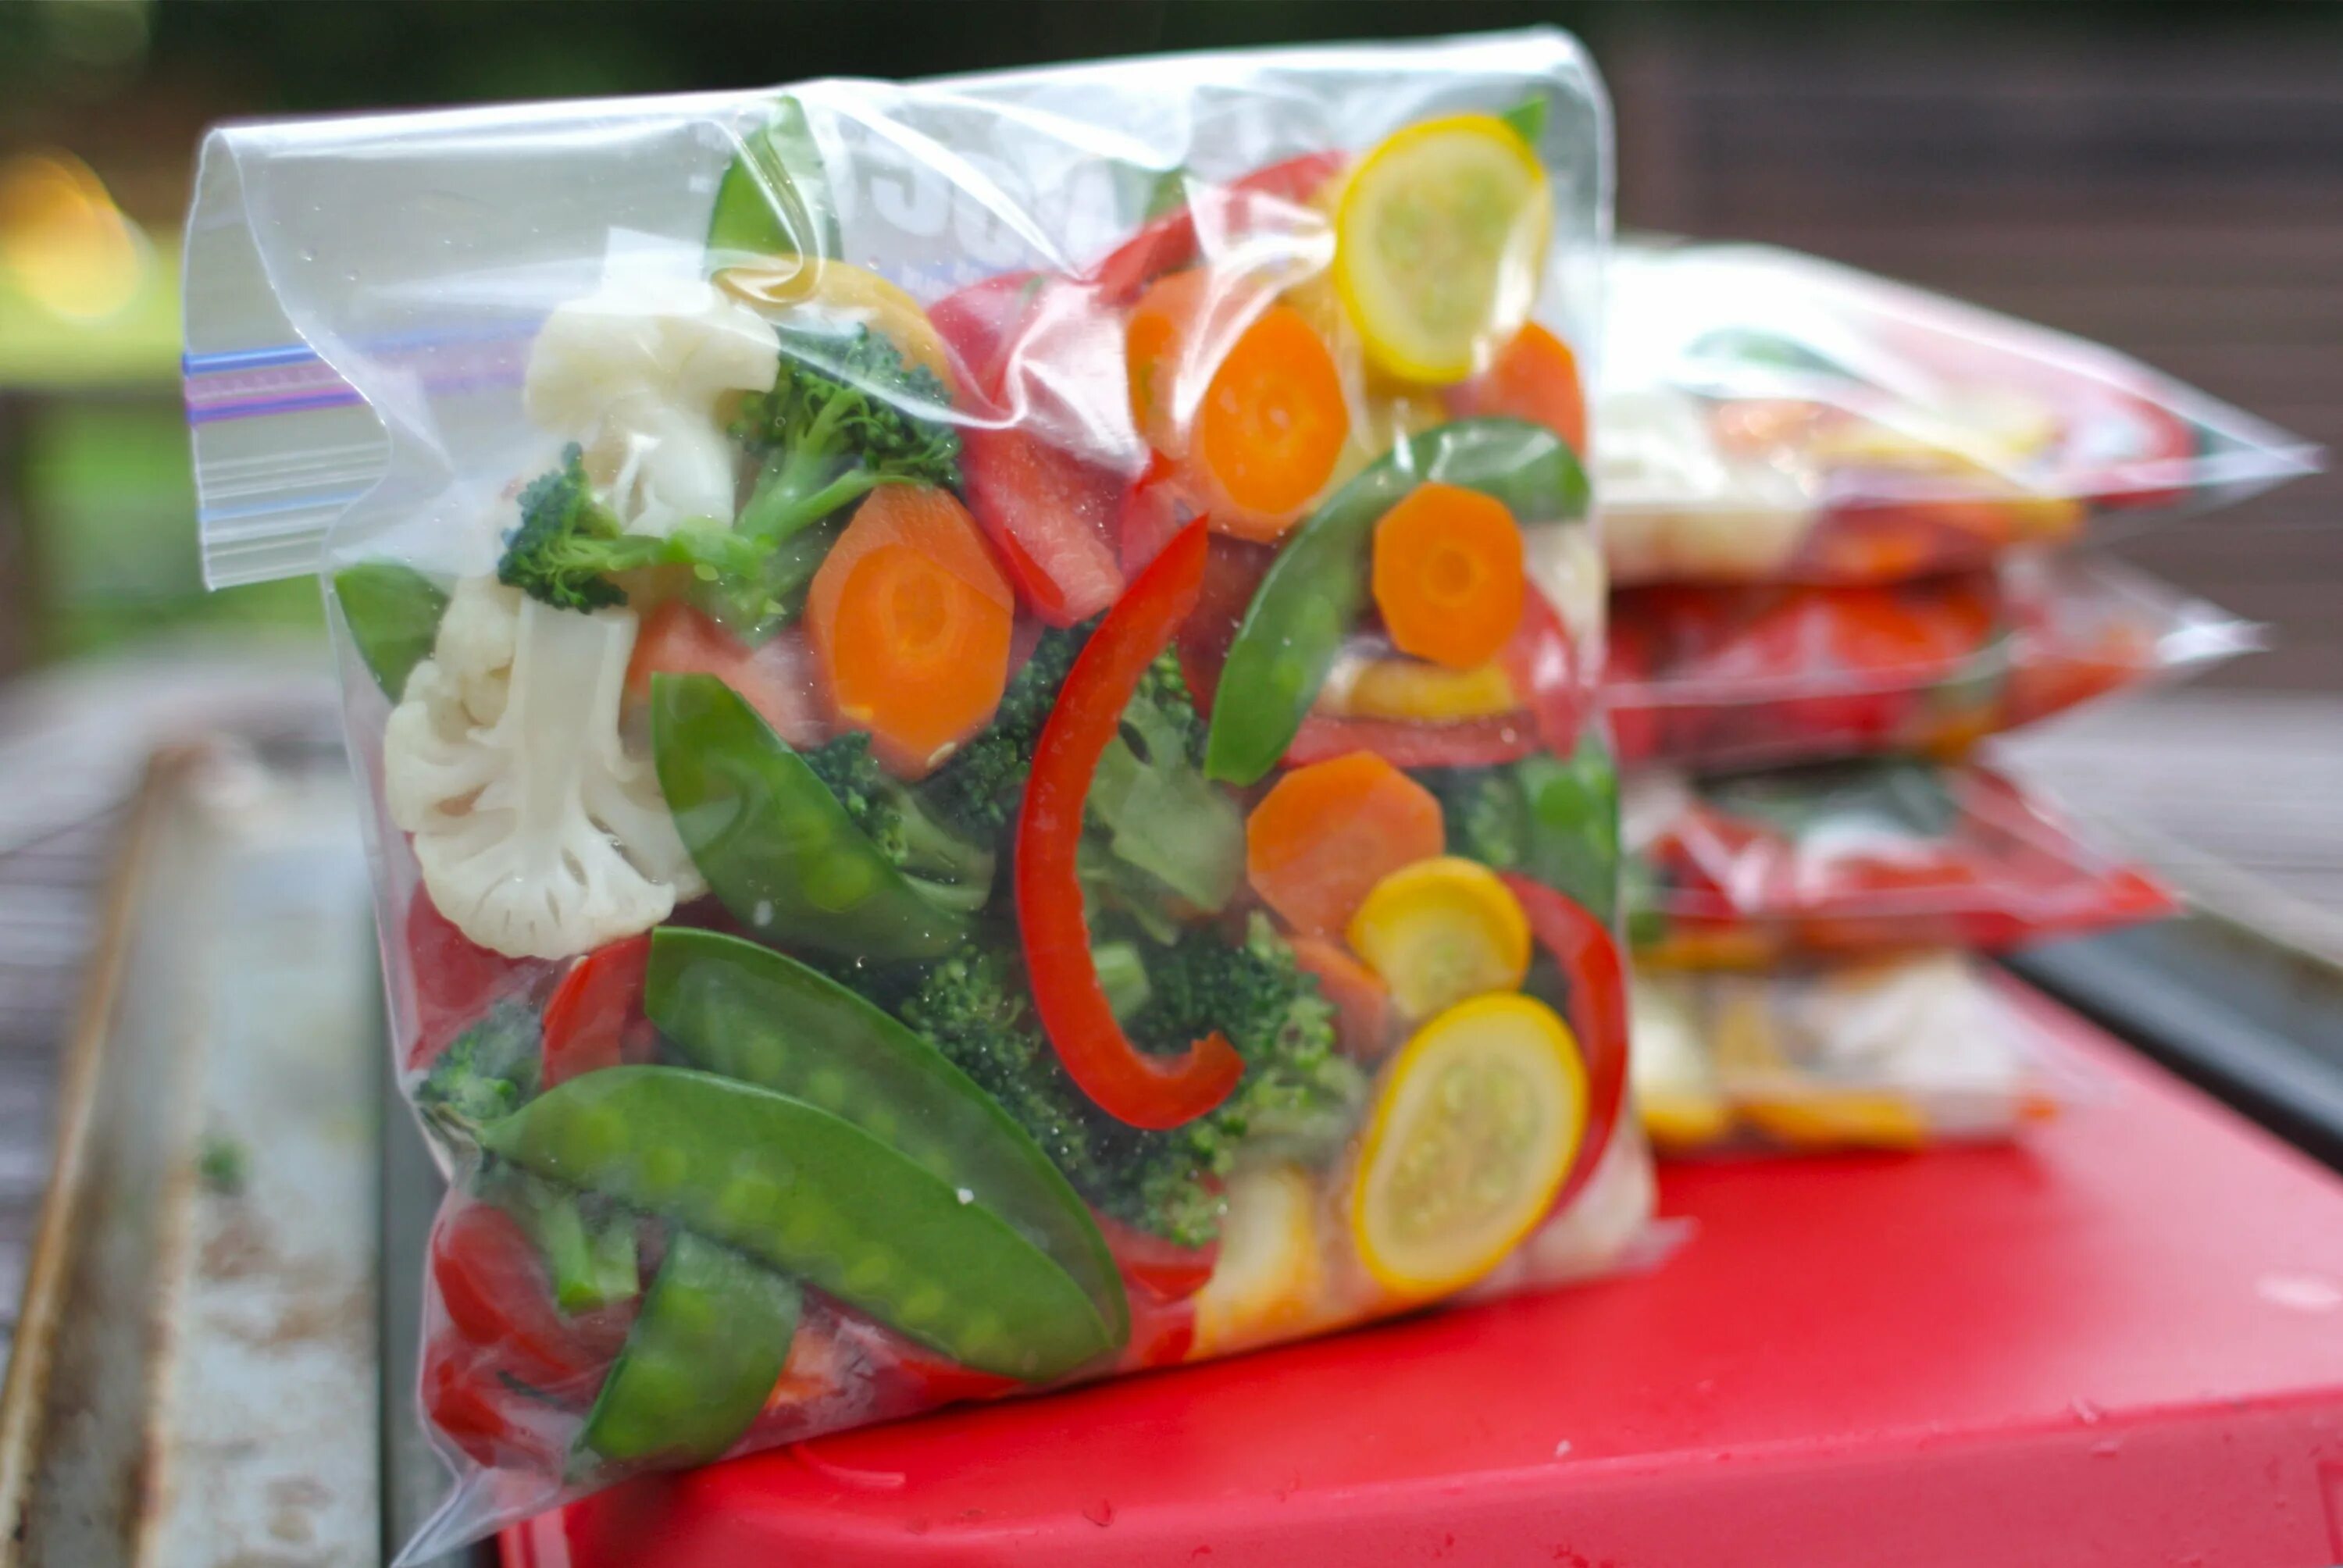 Овощи для заморозки. Заморозка овощей в пакетах. Овощи на зиму заморозка в пакетах. Пакеты для заморозки фруктов.